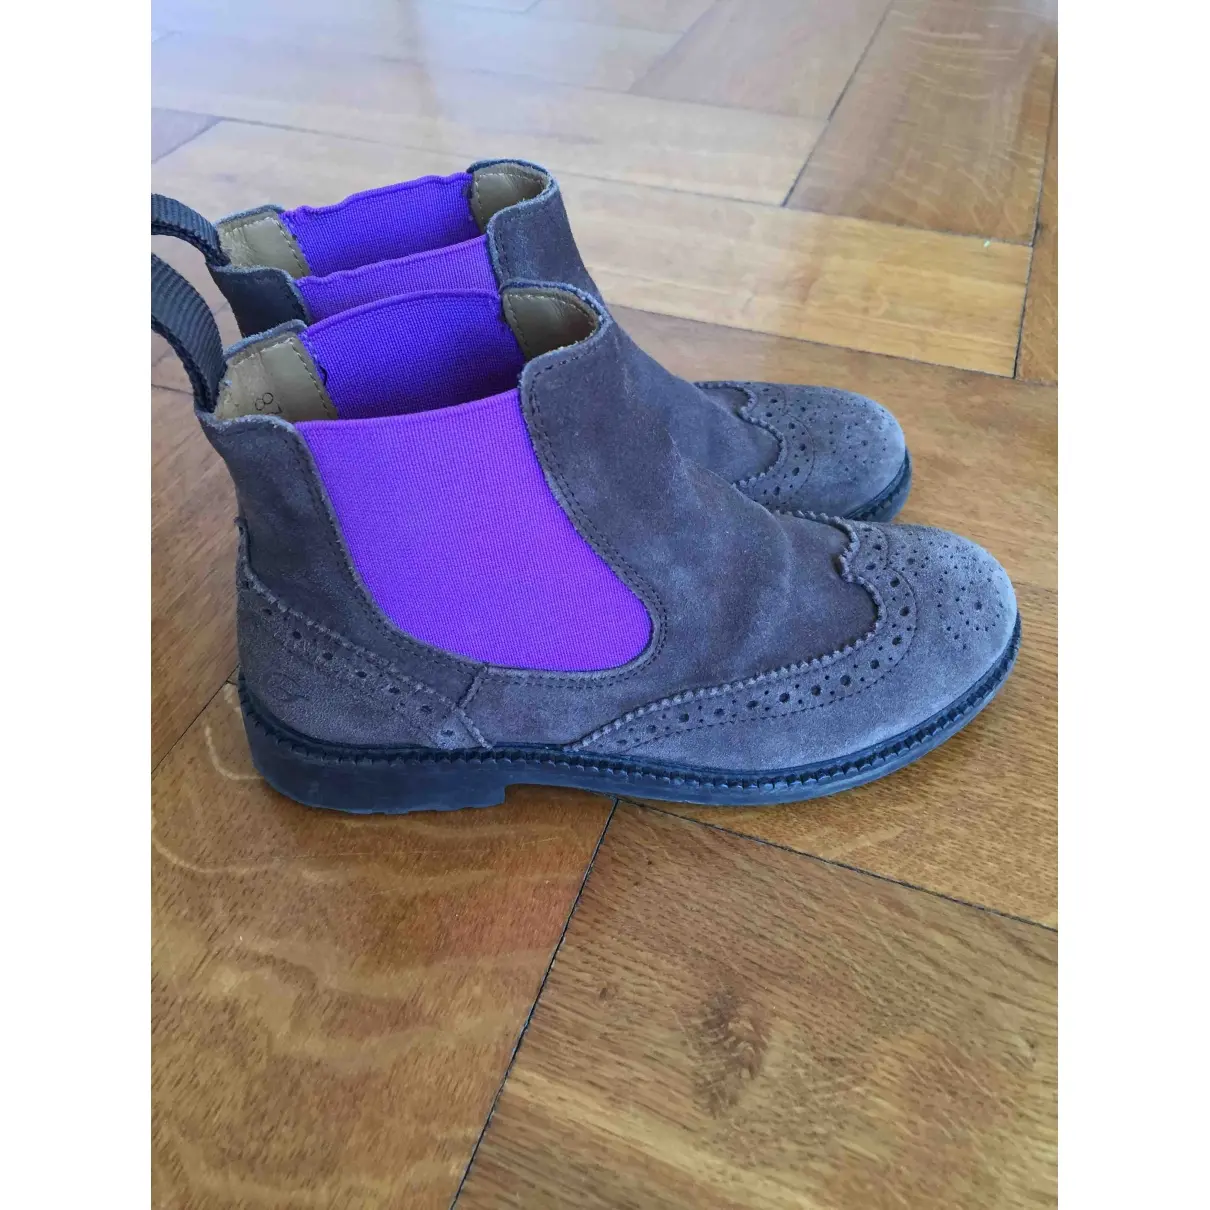 Gallucci Boots for sale